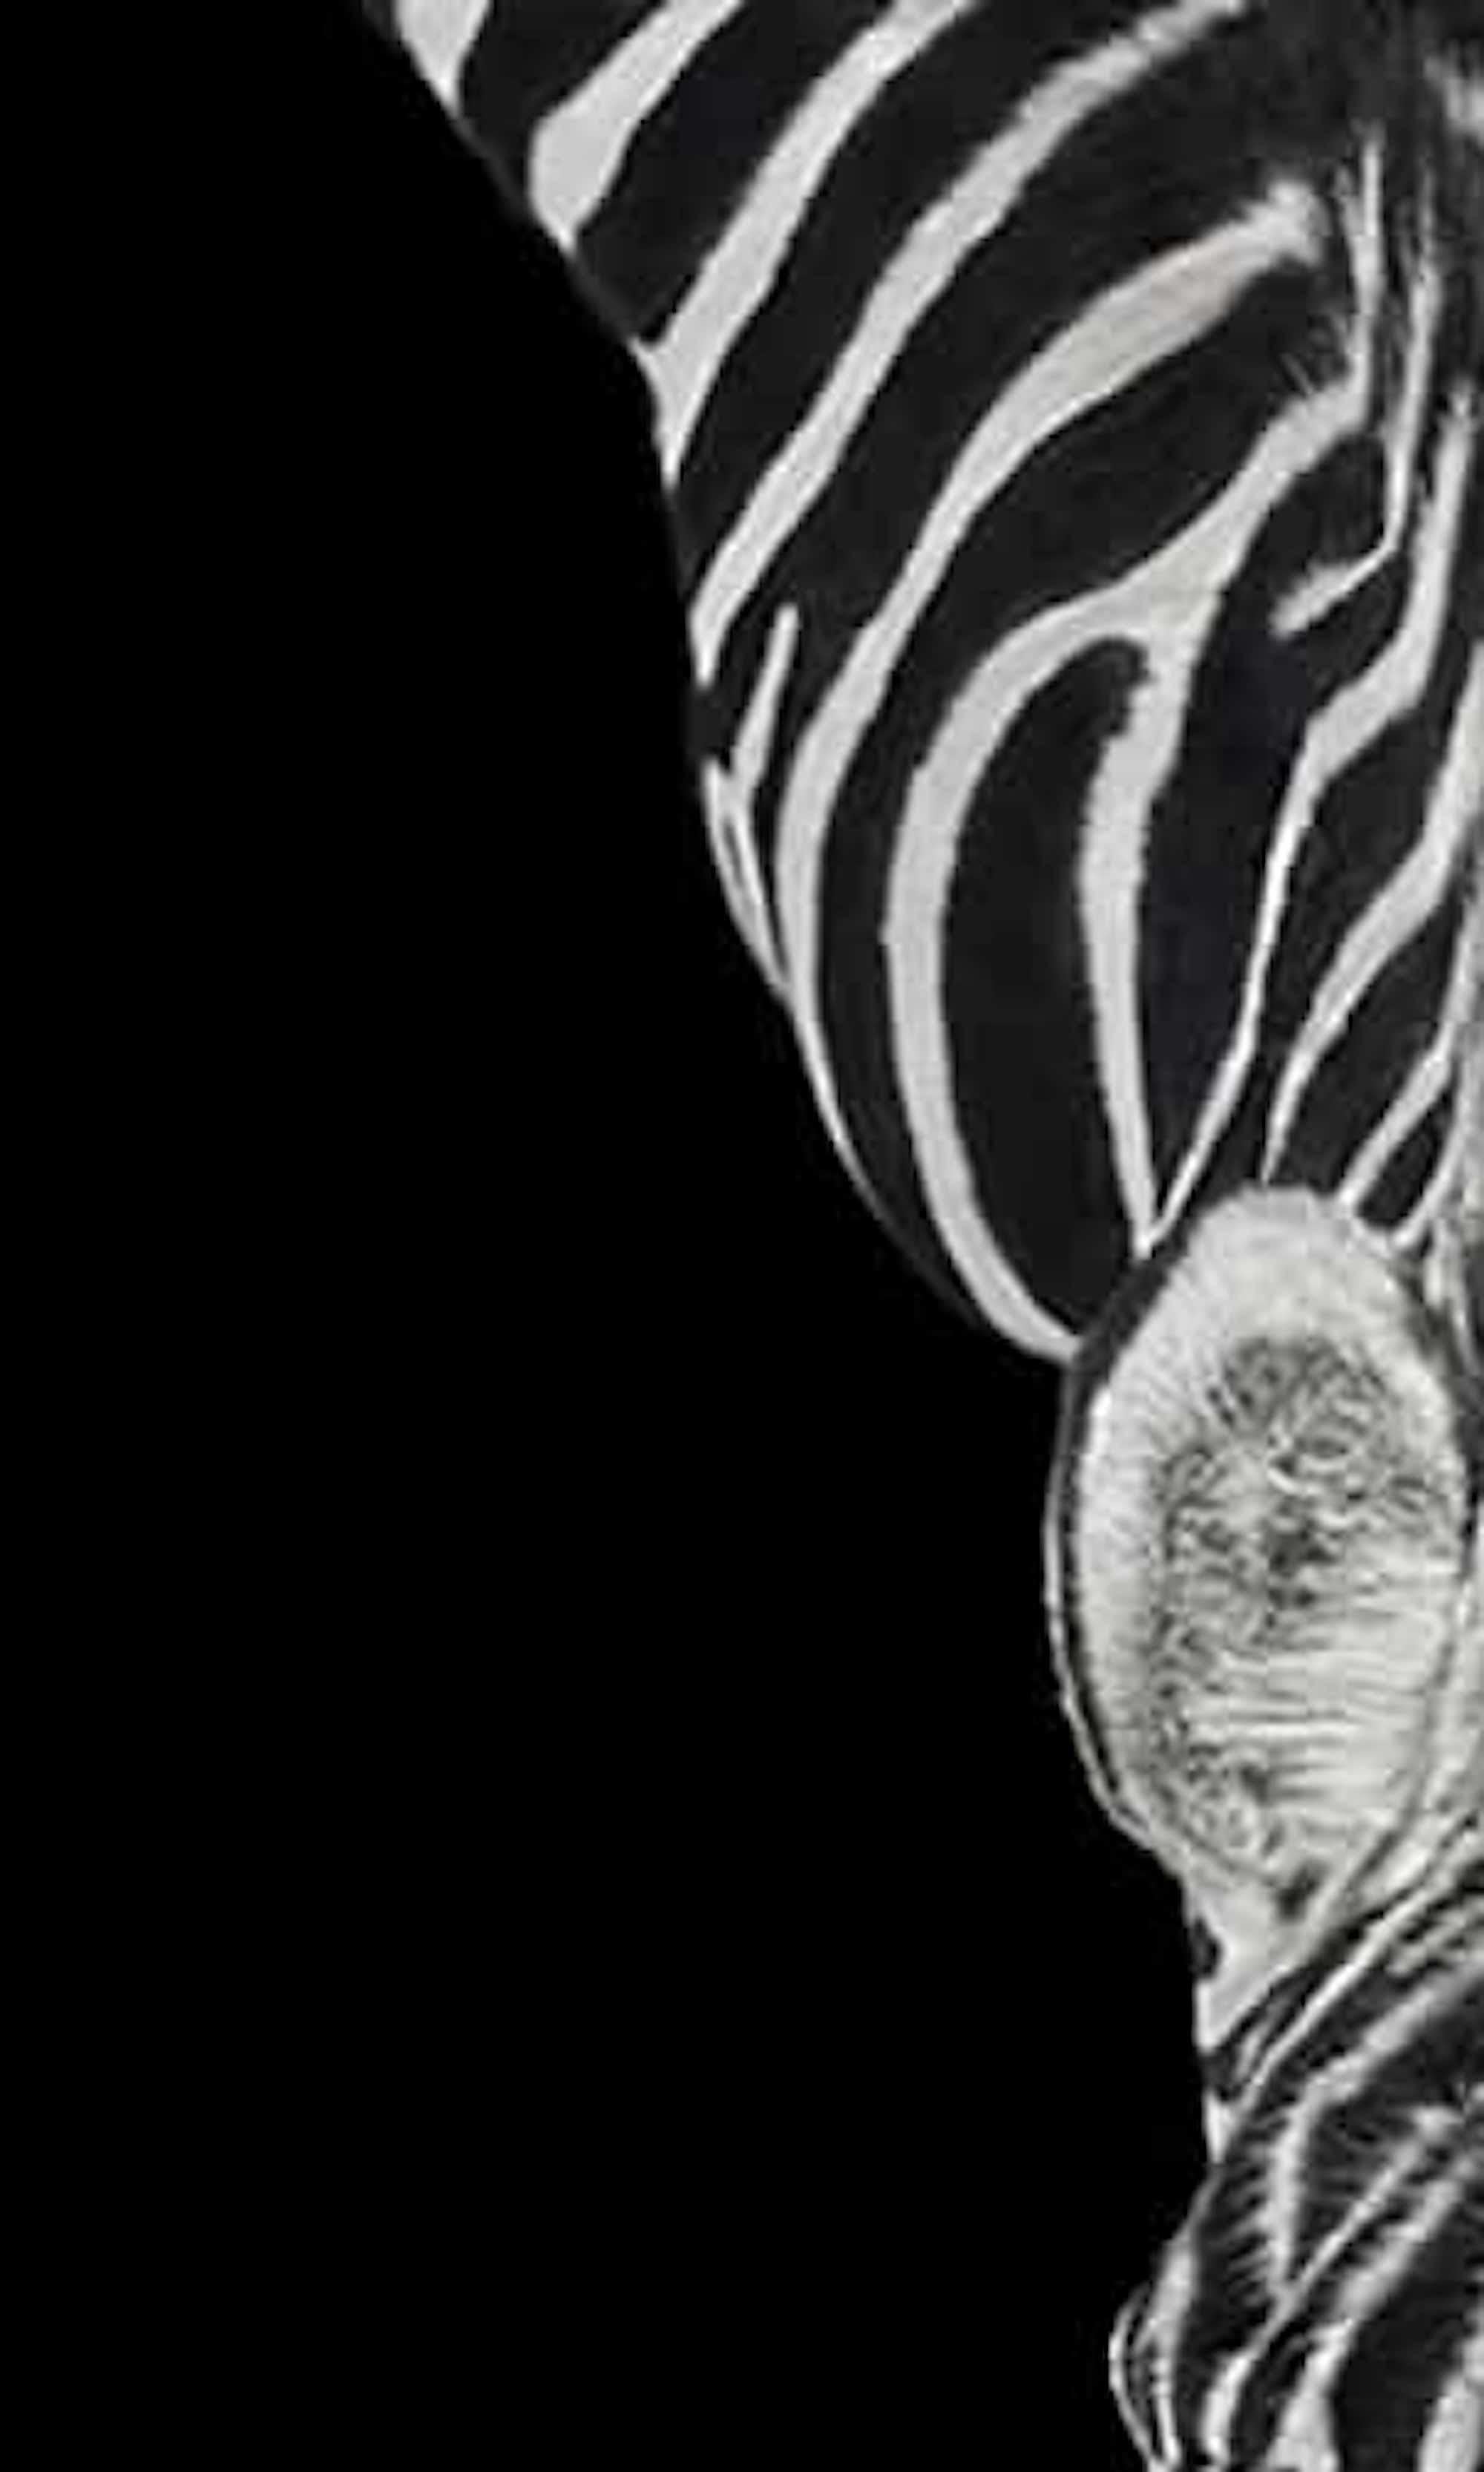 Zebra #3 by Brad Wilson - Animal portrait photography For Sale 3